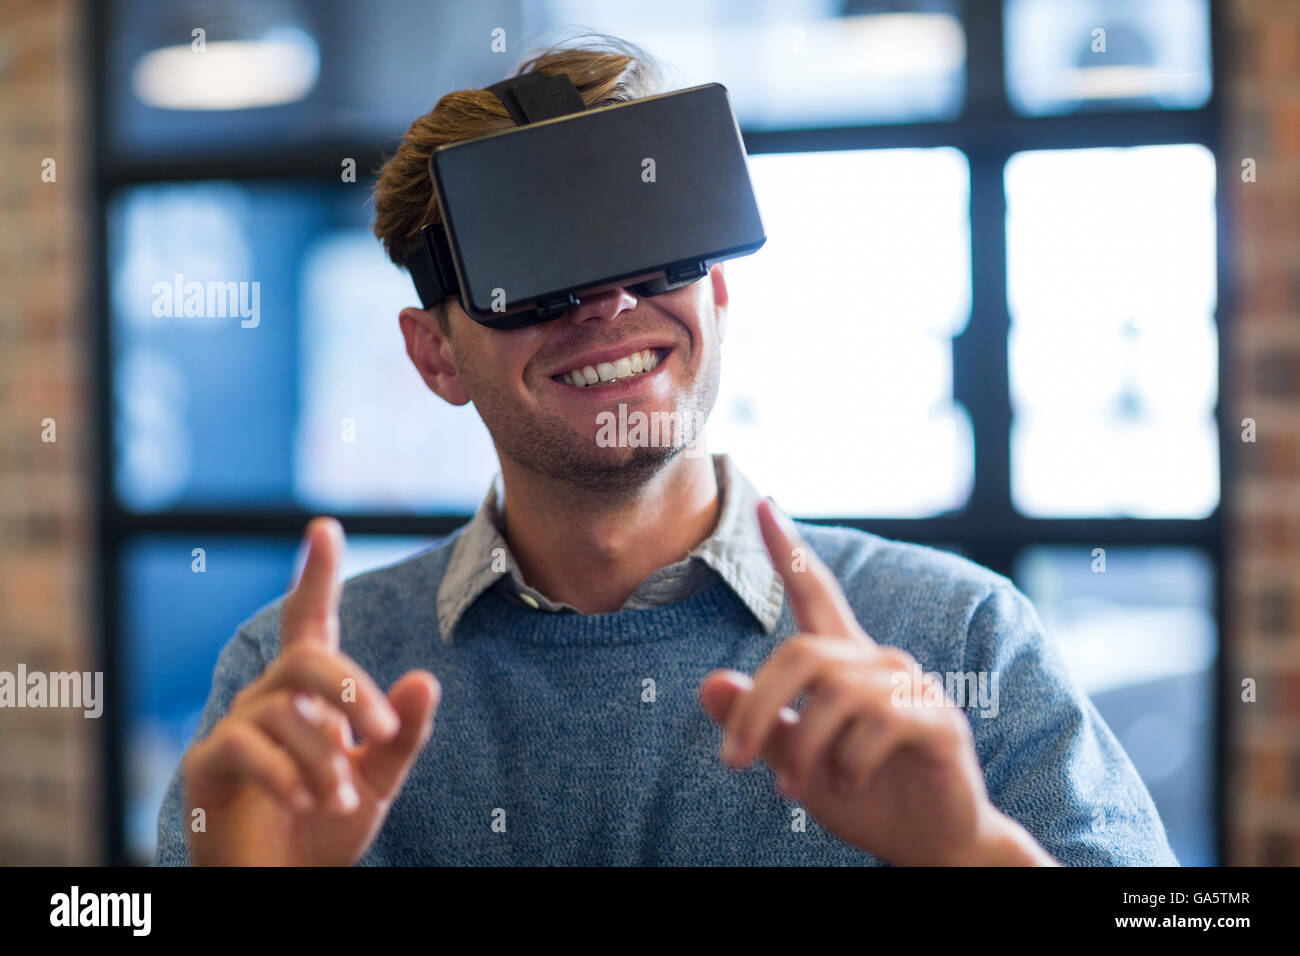 Businessman gesturing lors de l'utilisation de casque de réalité virtuelle Banque D'Images